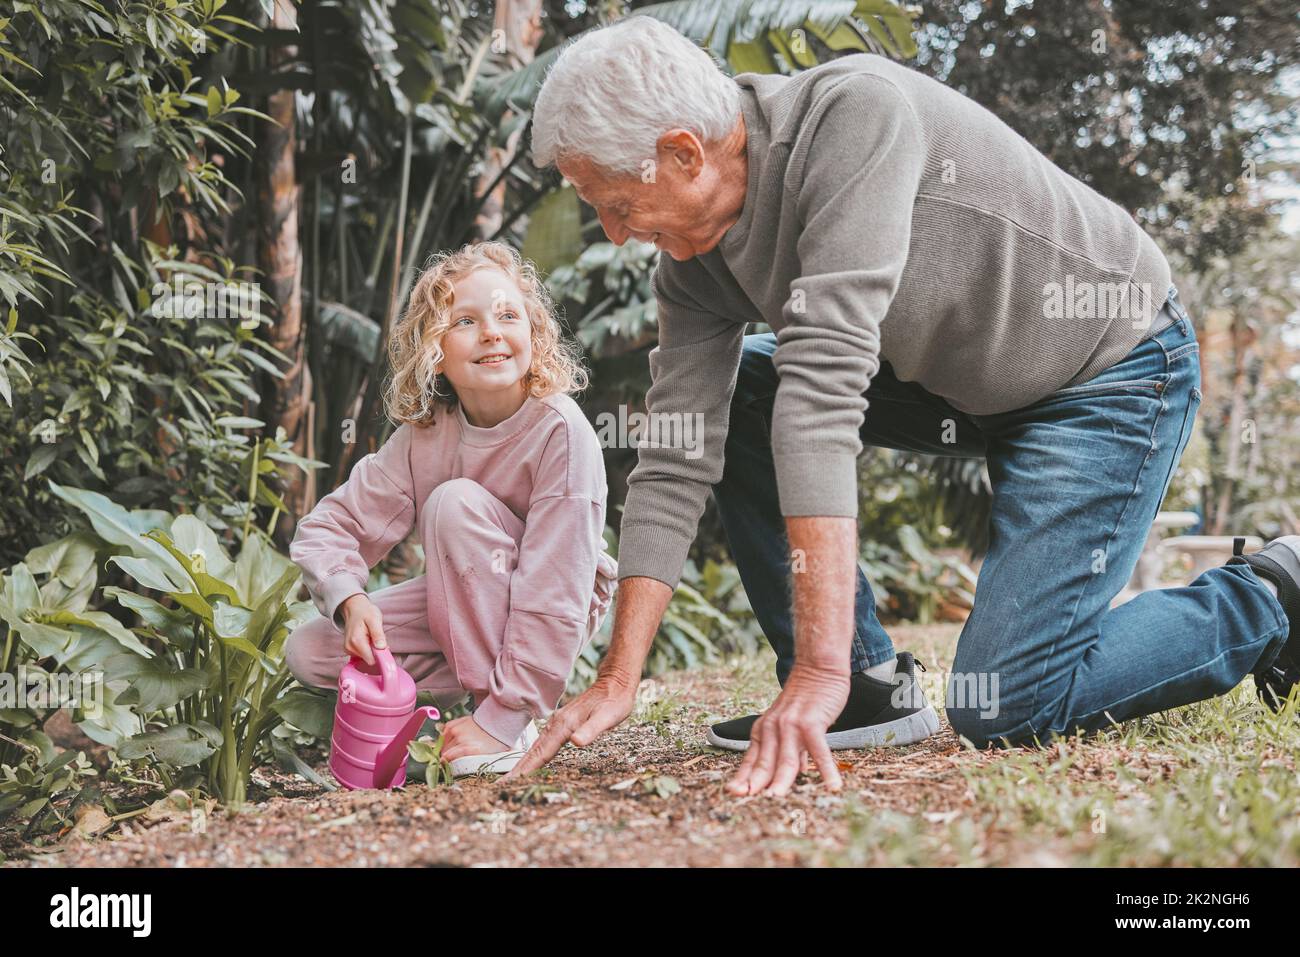 La boue s'efface, mais les souvenirs durent éternellement. Photo d'une adorable petite fille en jardinage avec son grand-père. Banque D'Images